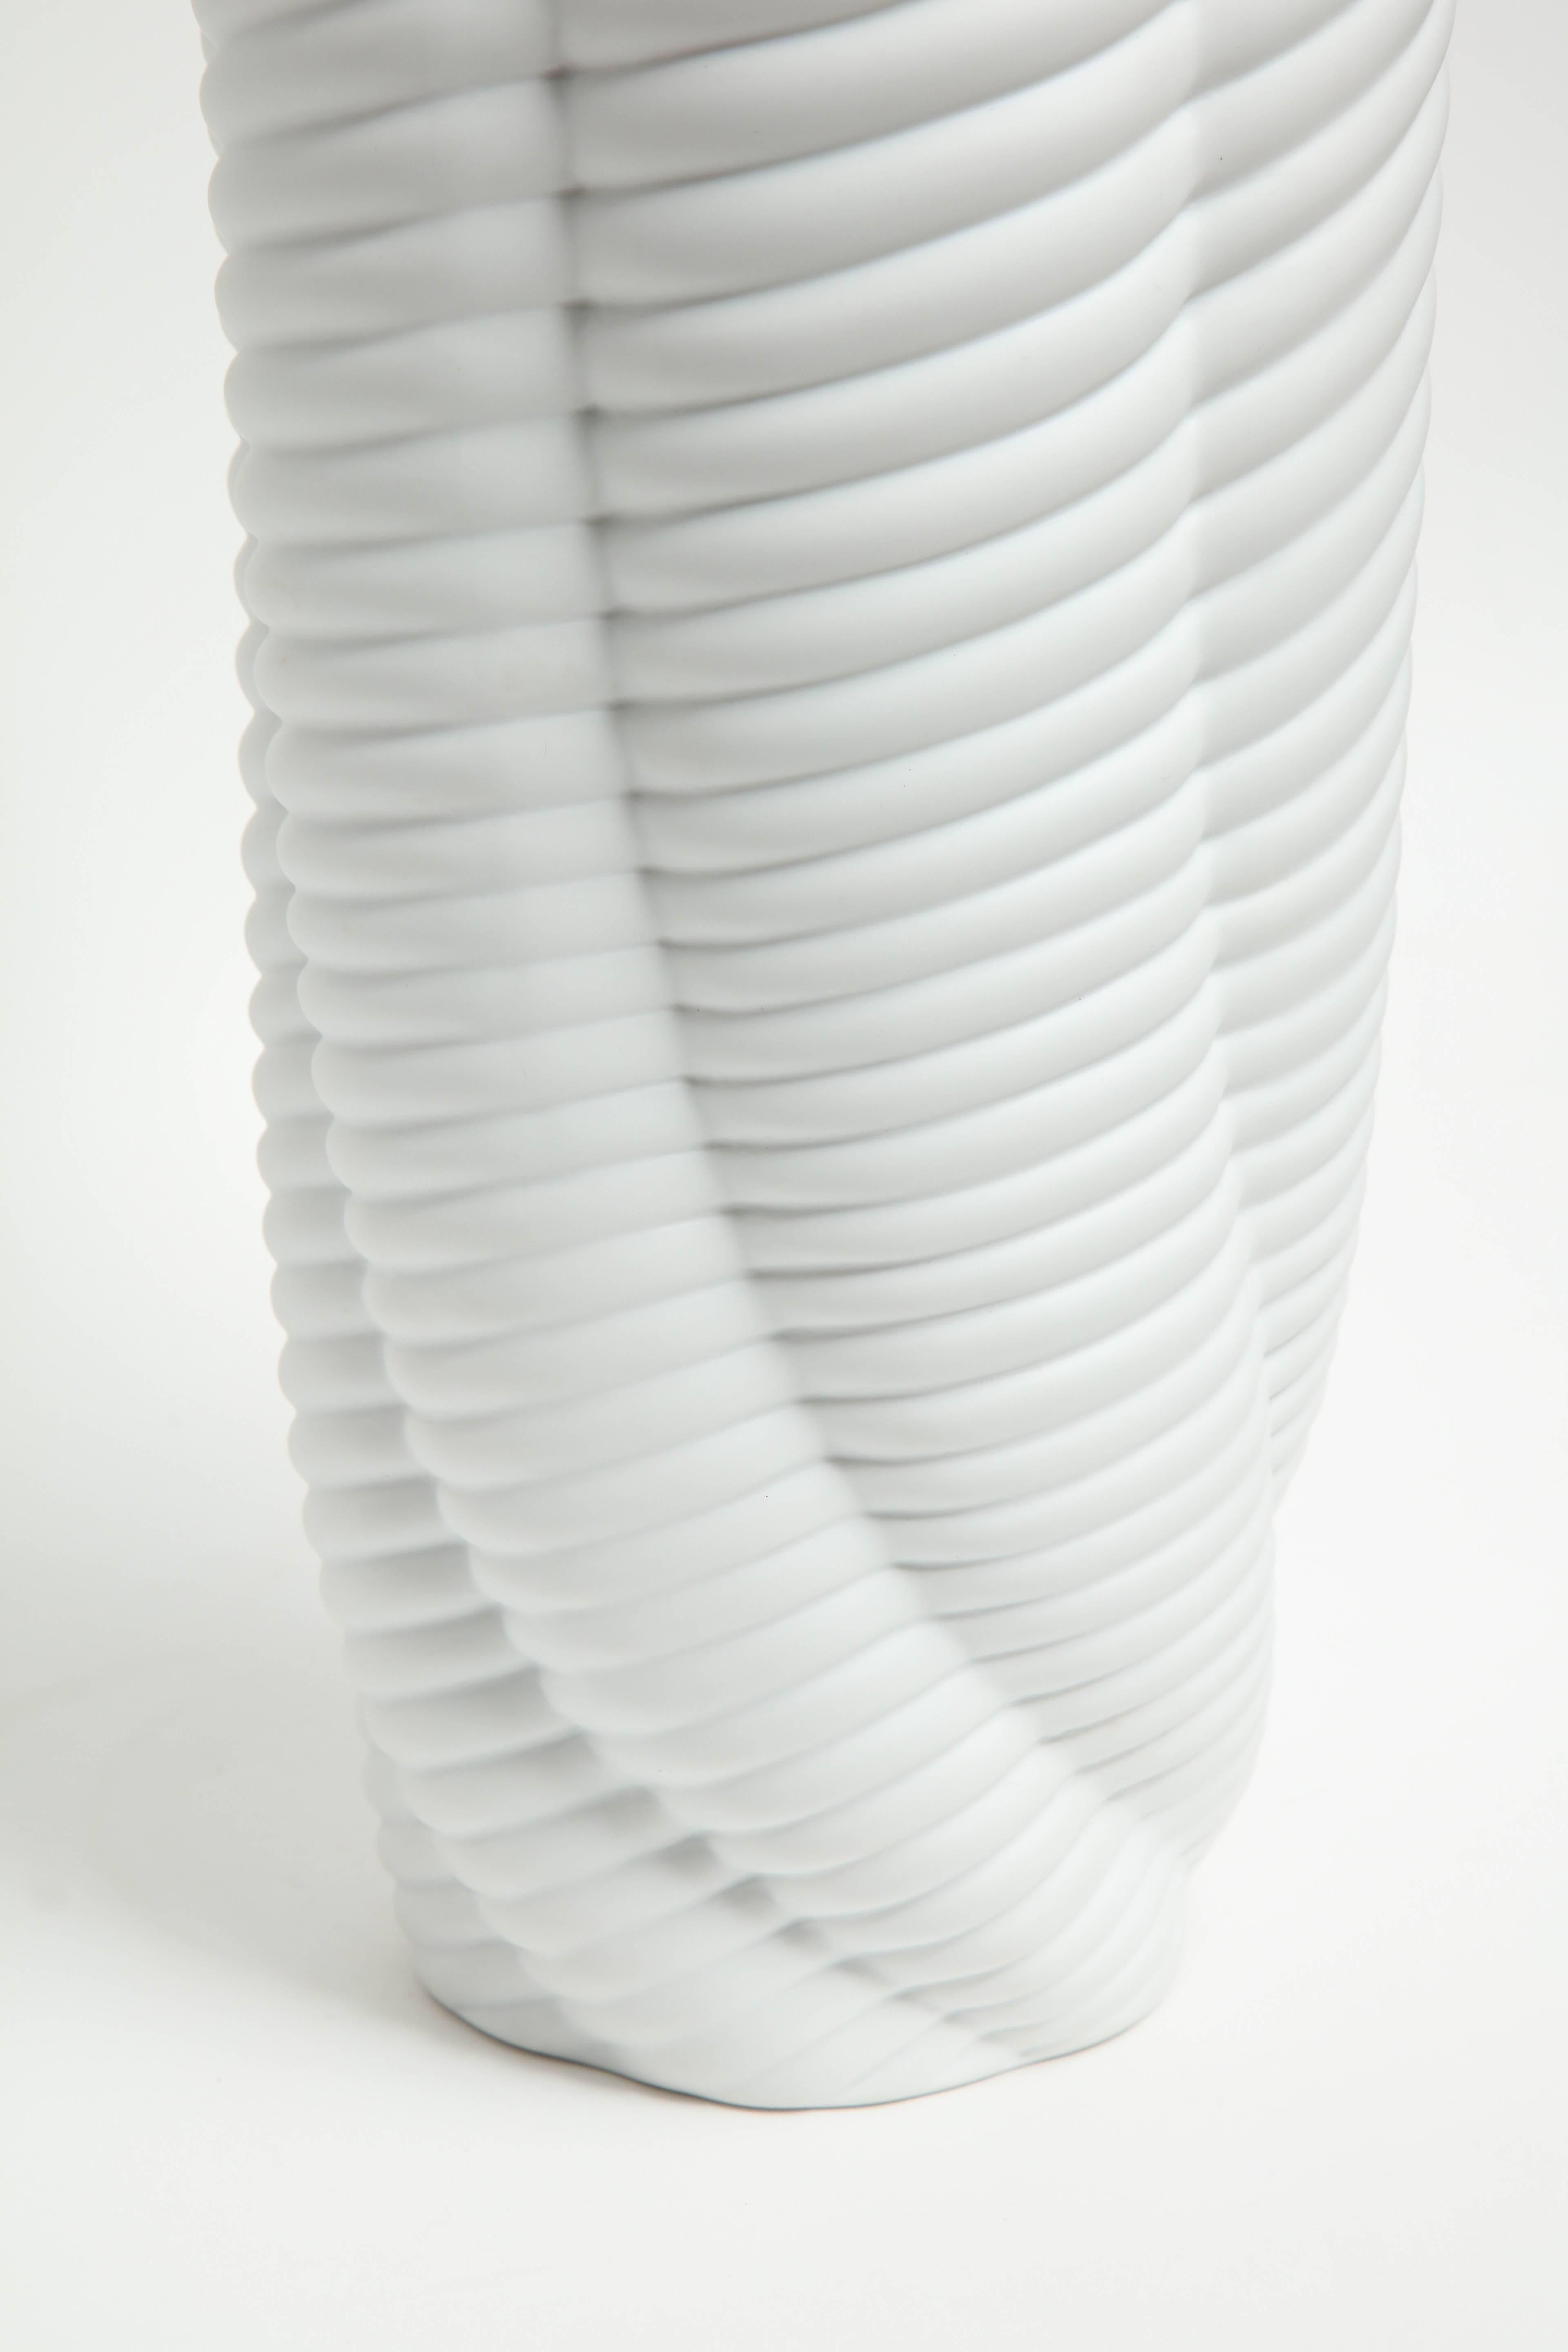 Pair of Rippled Porcelain Vases 1